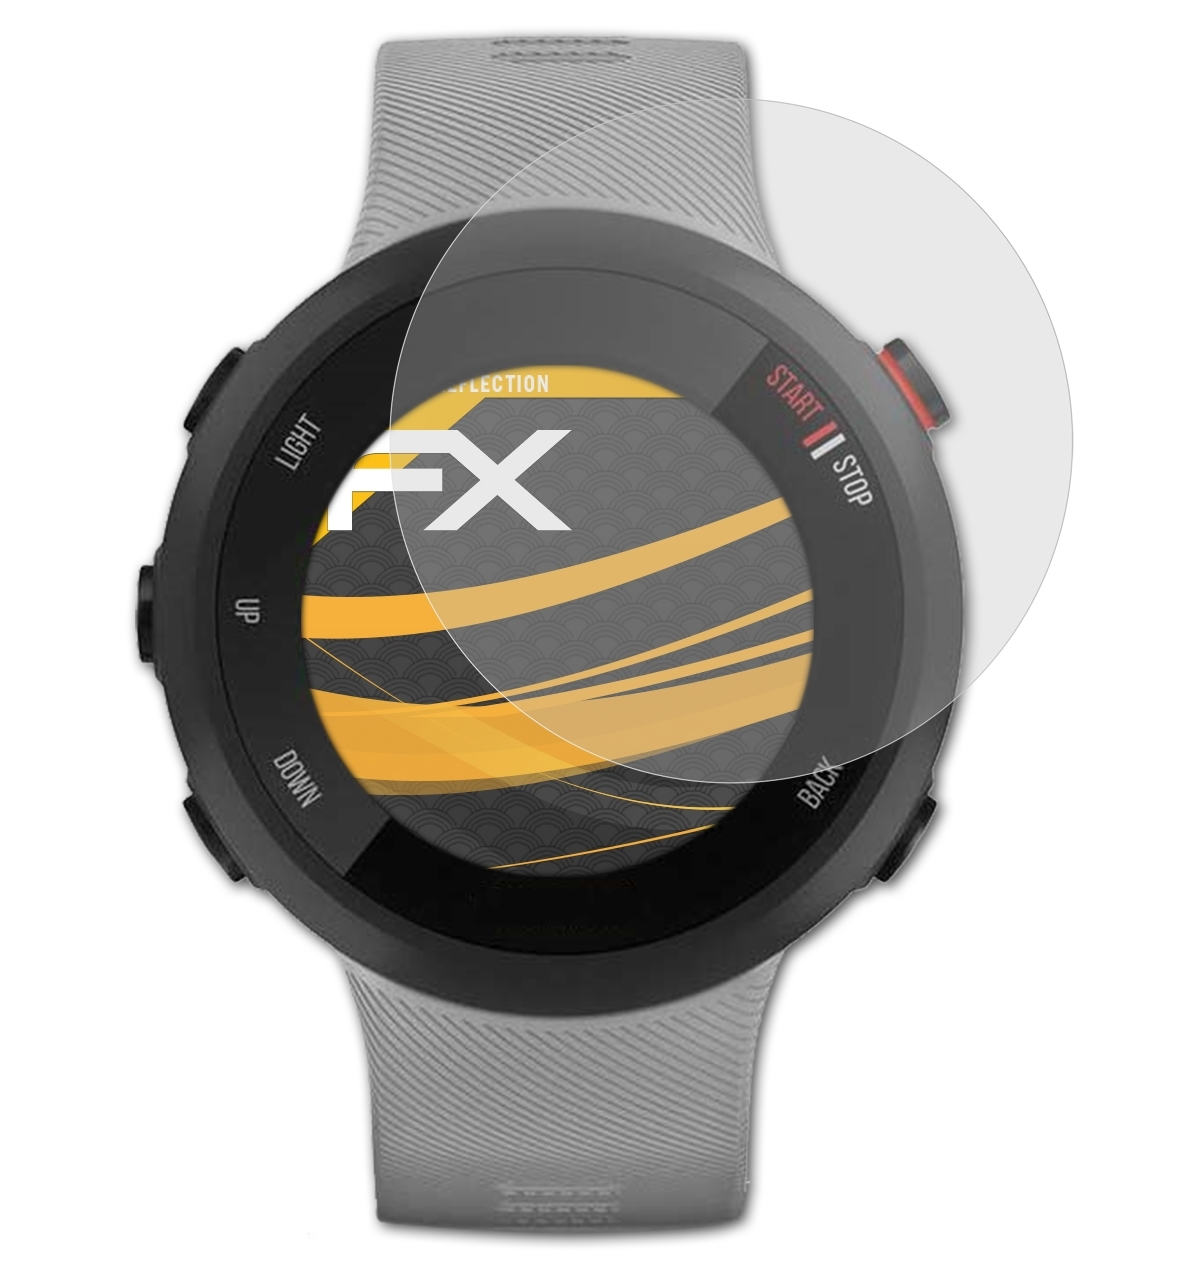 Plus) FX-Antireflex 45 3x Displayschutz(für Forerunner ATFOLIX Garmin